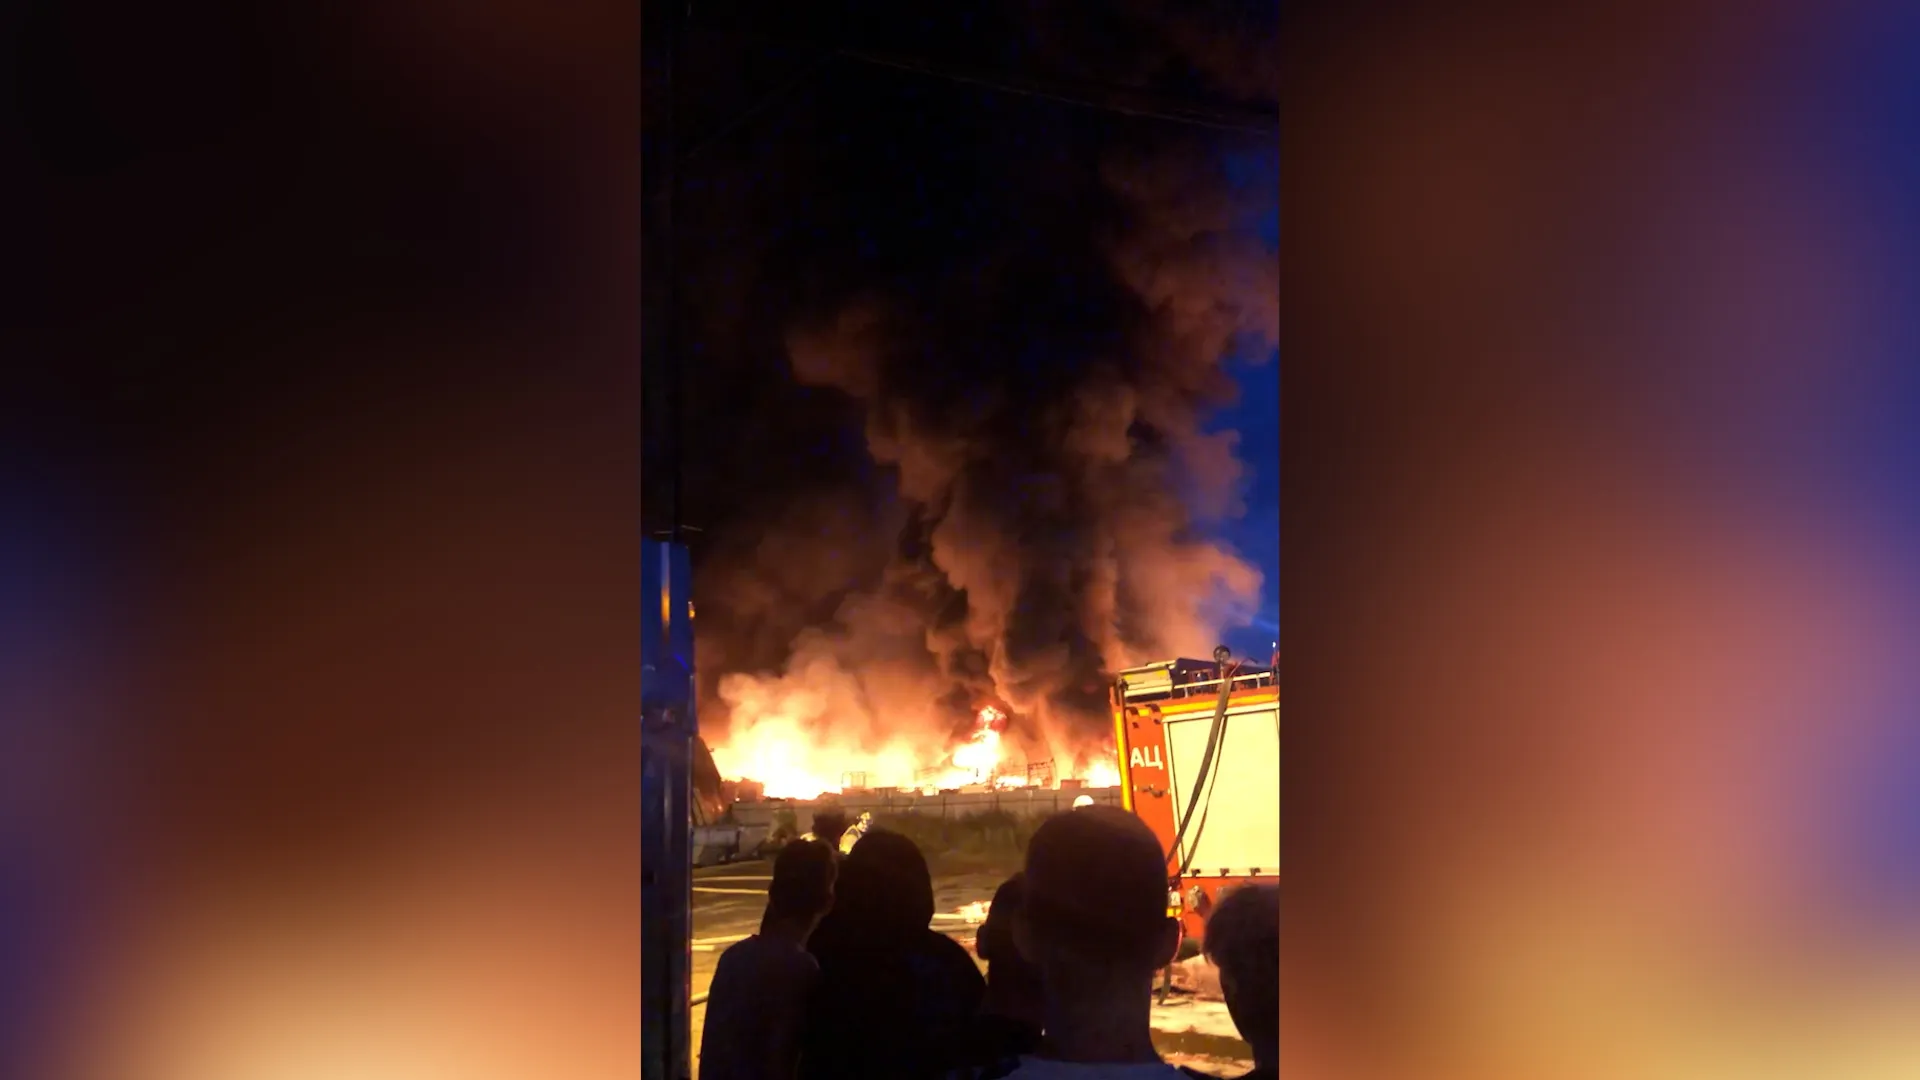 Пожар со взрывами бушует на производственной площадке в Нижнем Новгороде